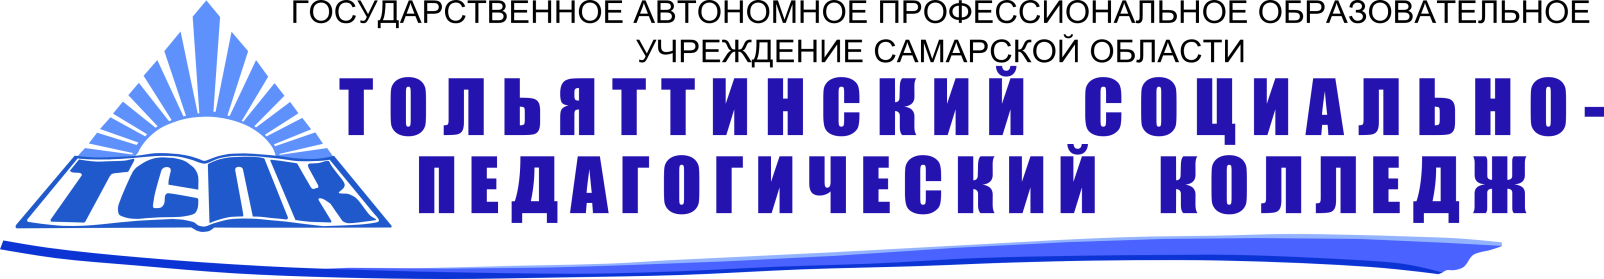 Социально-педагогический колледж Тольятти. Колледж ТСПК Тольятти. Эмблема ТСПК Тольятти. ТСПК логотип колледж.